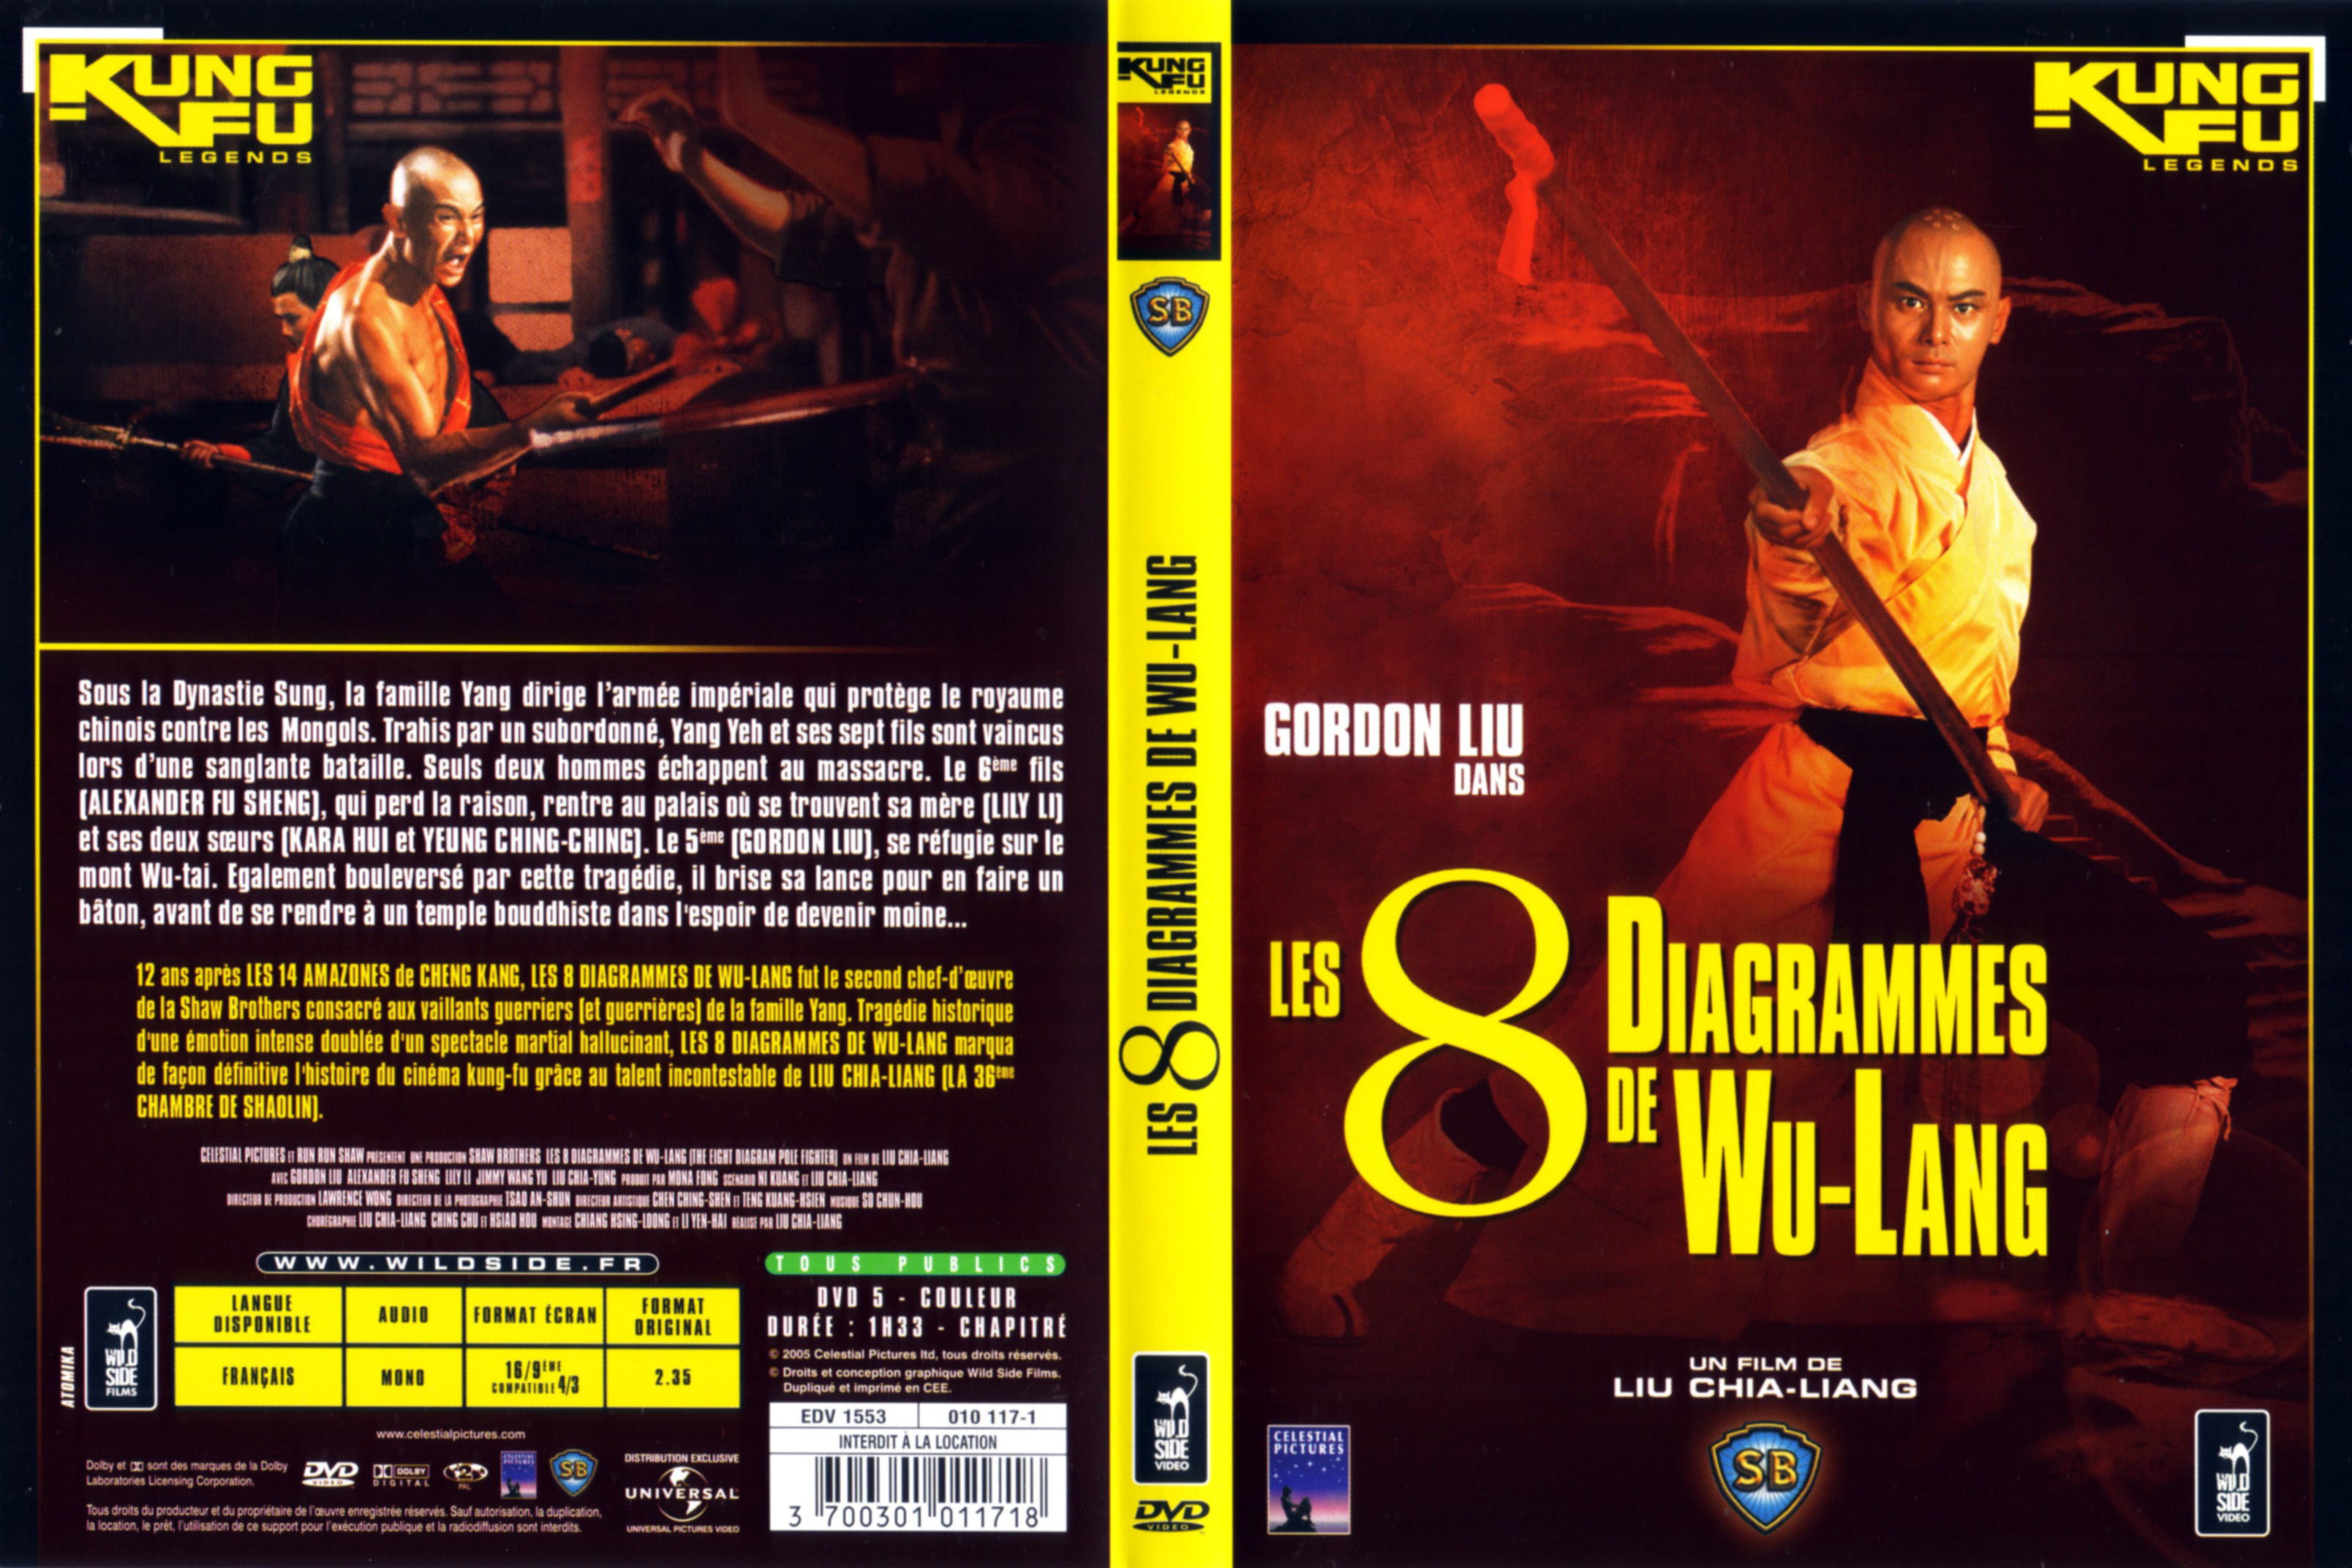 Jaquette DVD Les 8 diagrammes de Wu-Lang v2